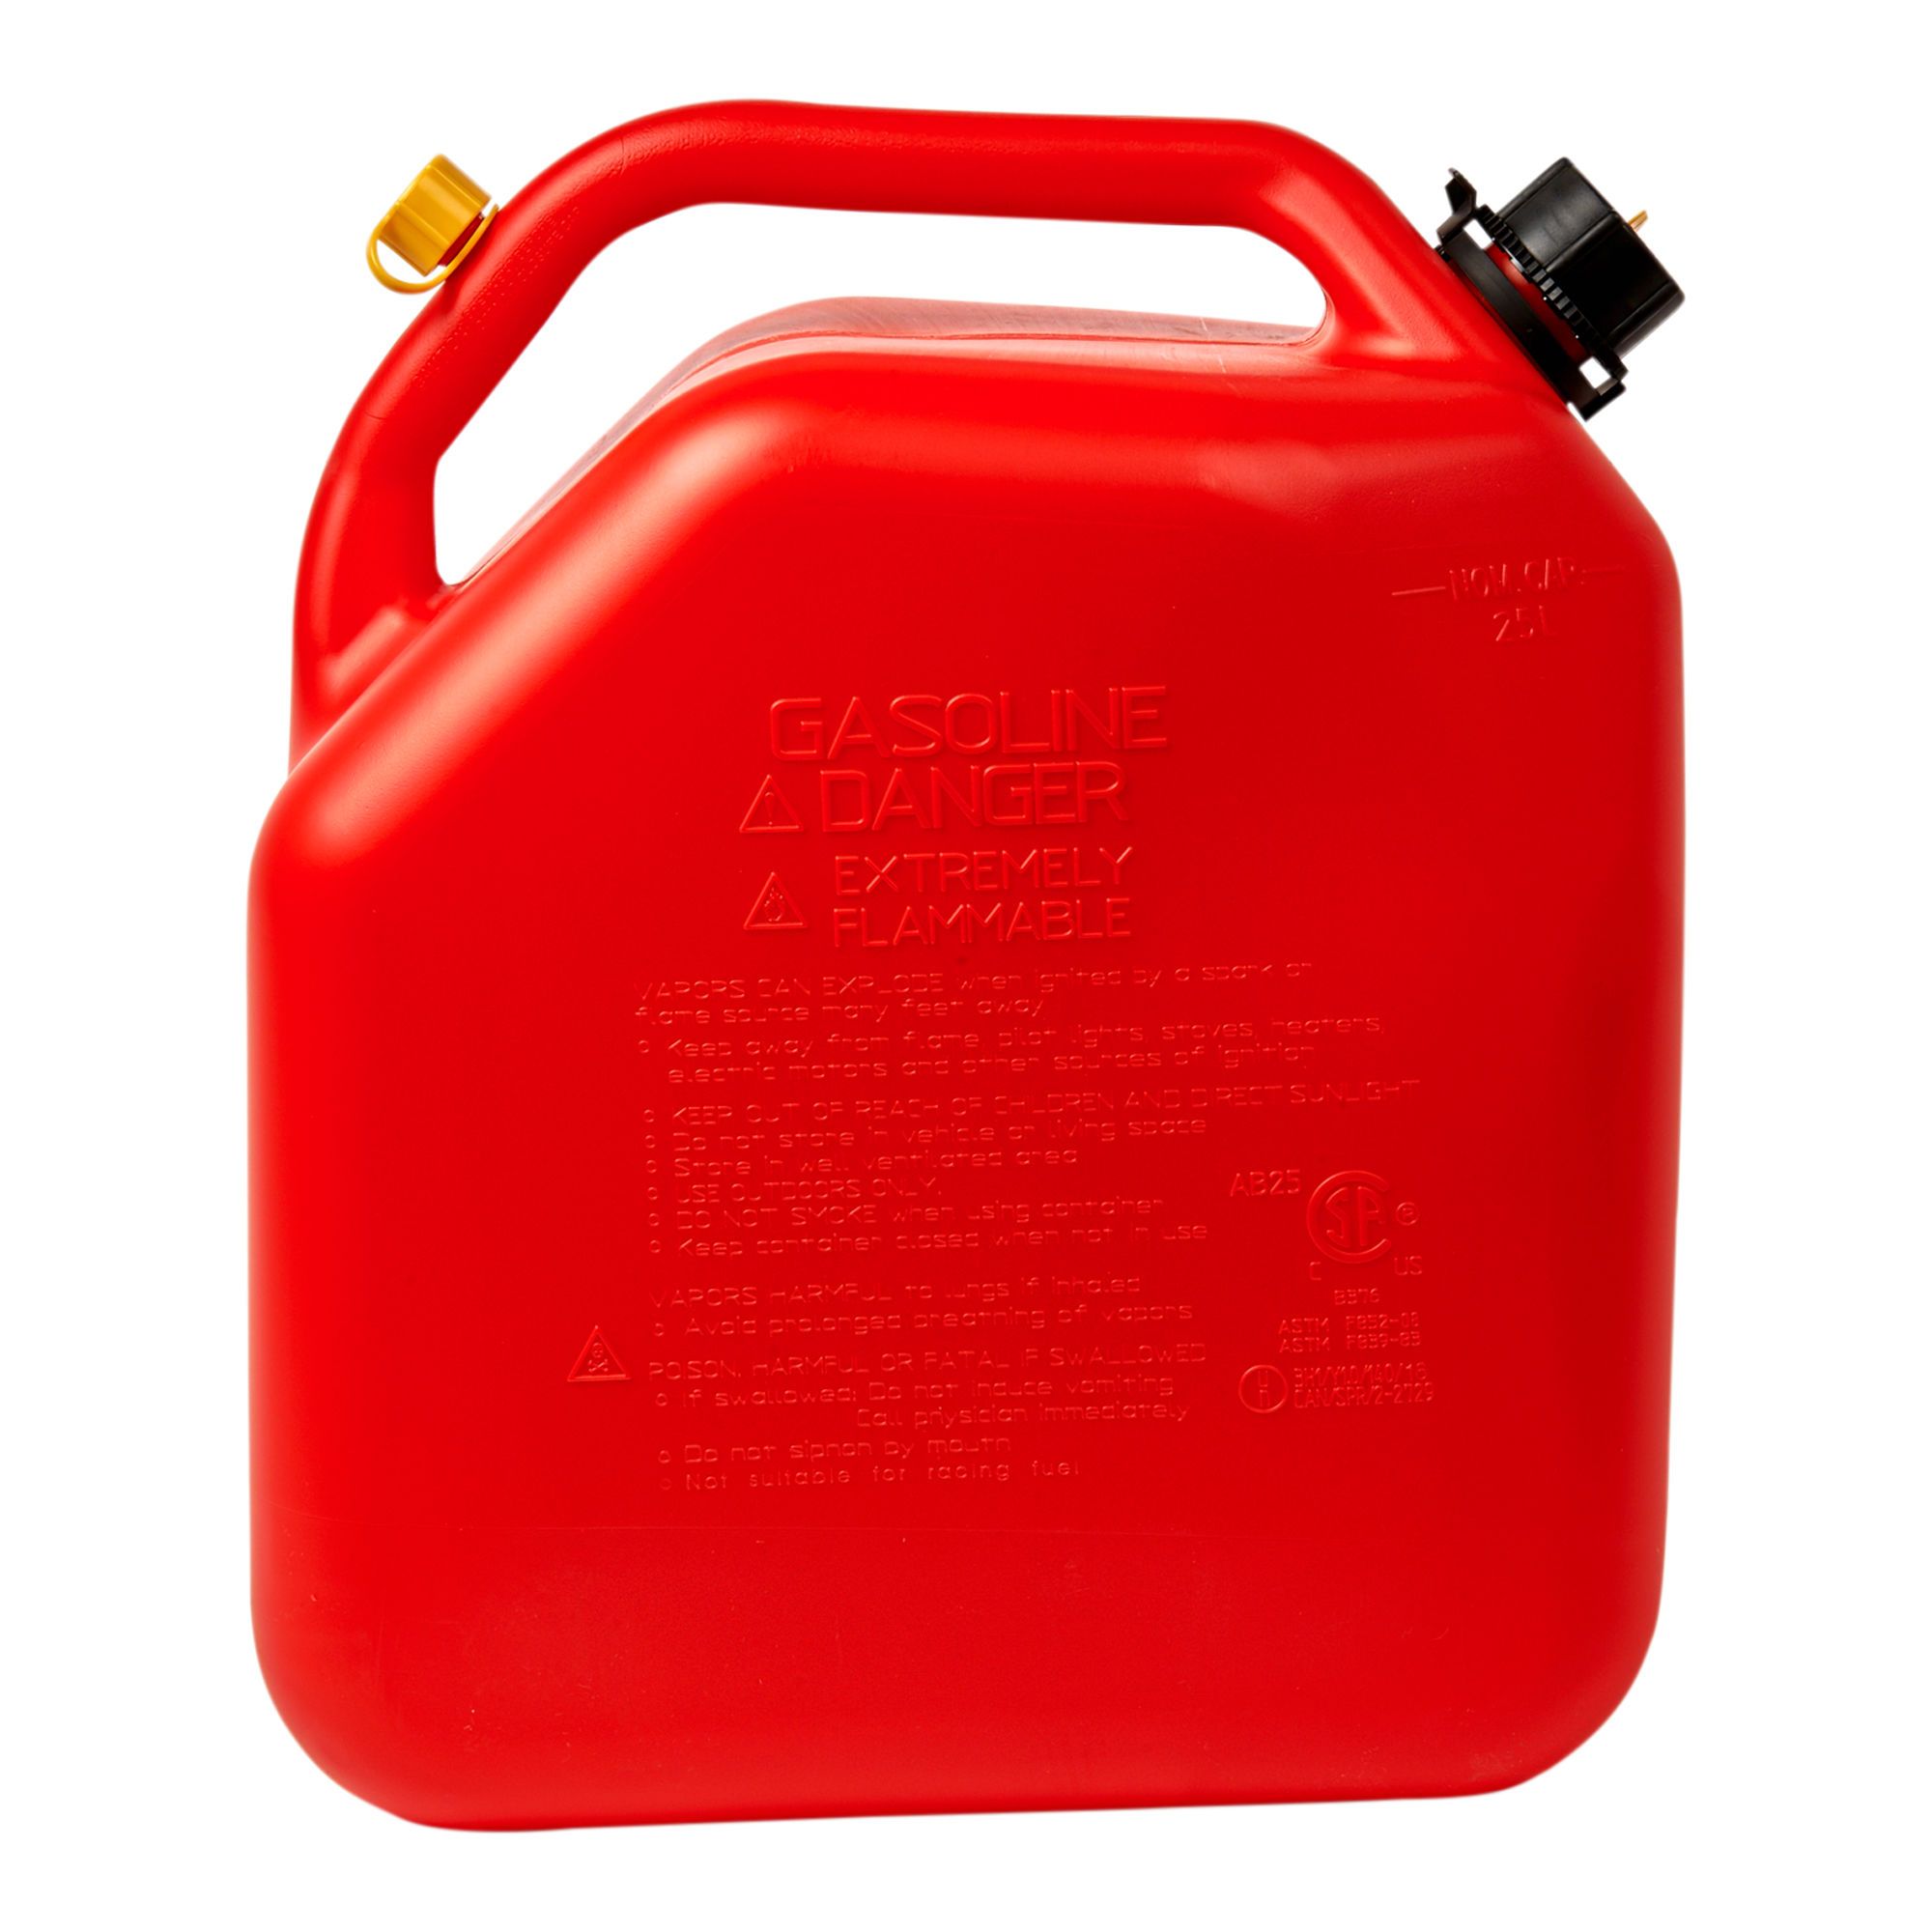 Bidon à essence Scepter régulier en plastique rouge, 10 litres/2,5 gallons  07079